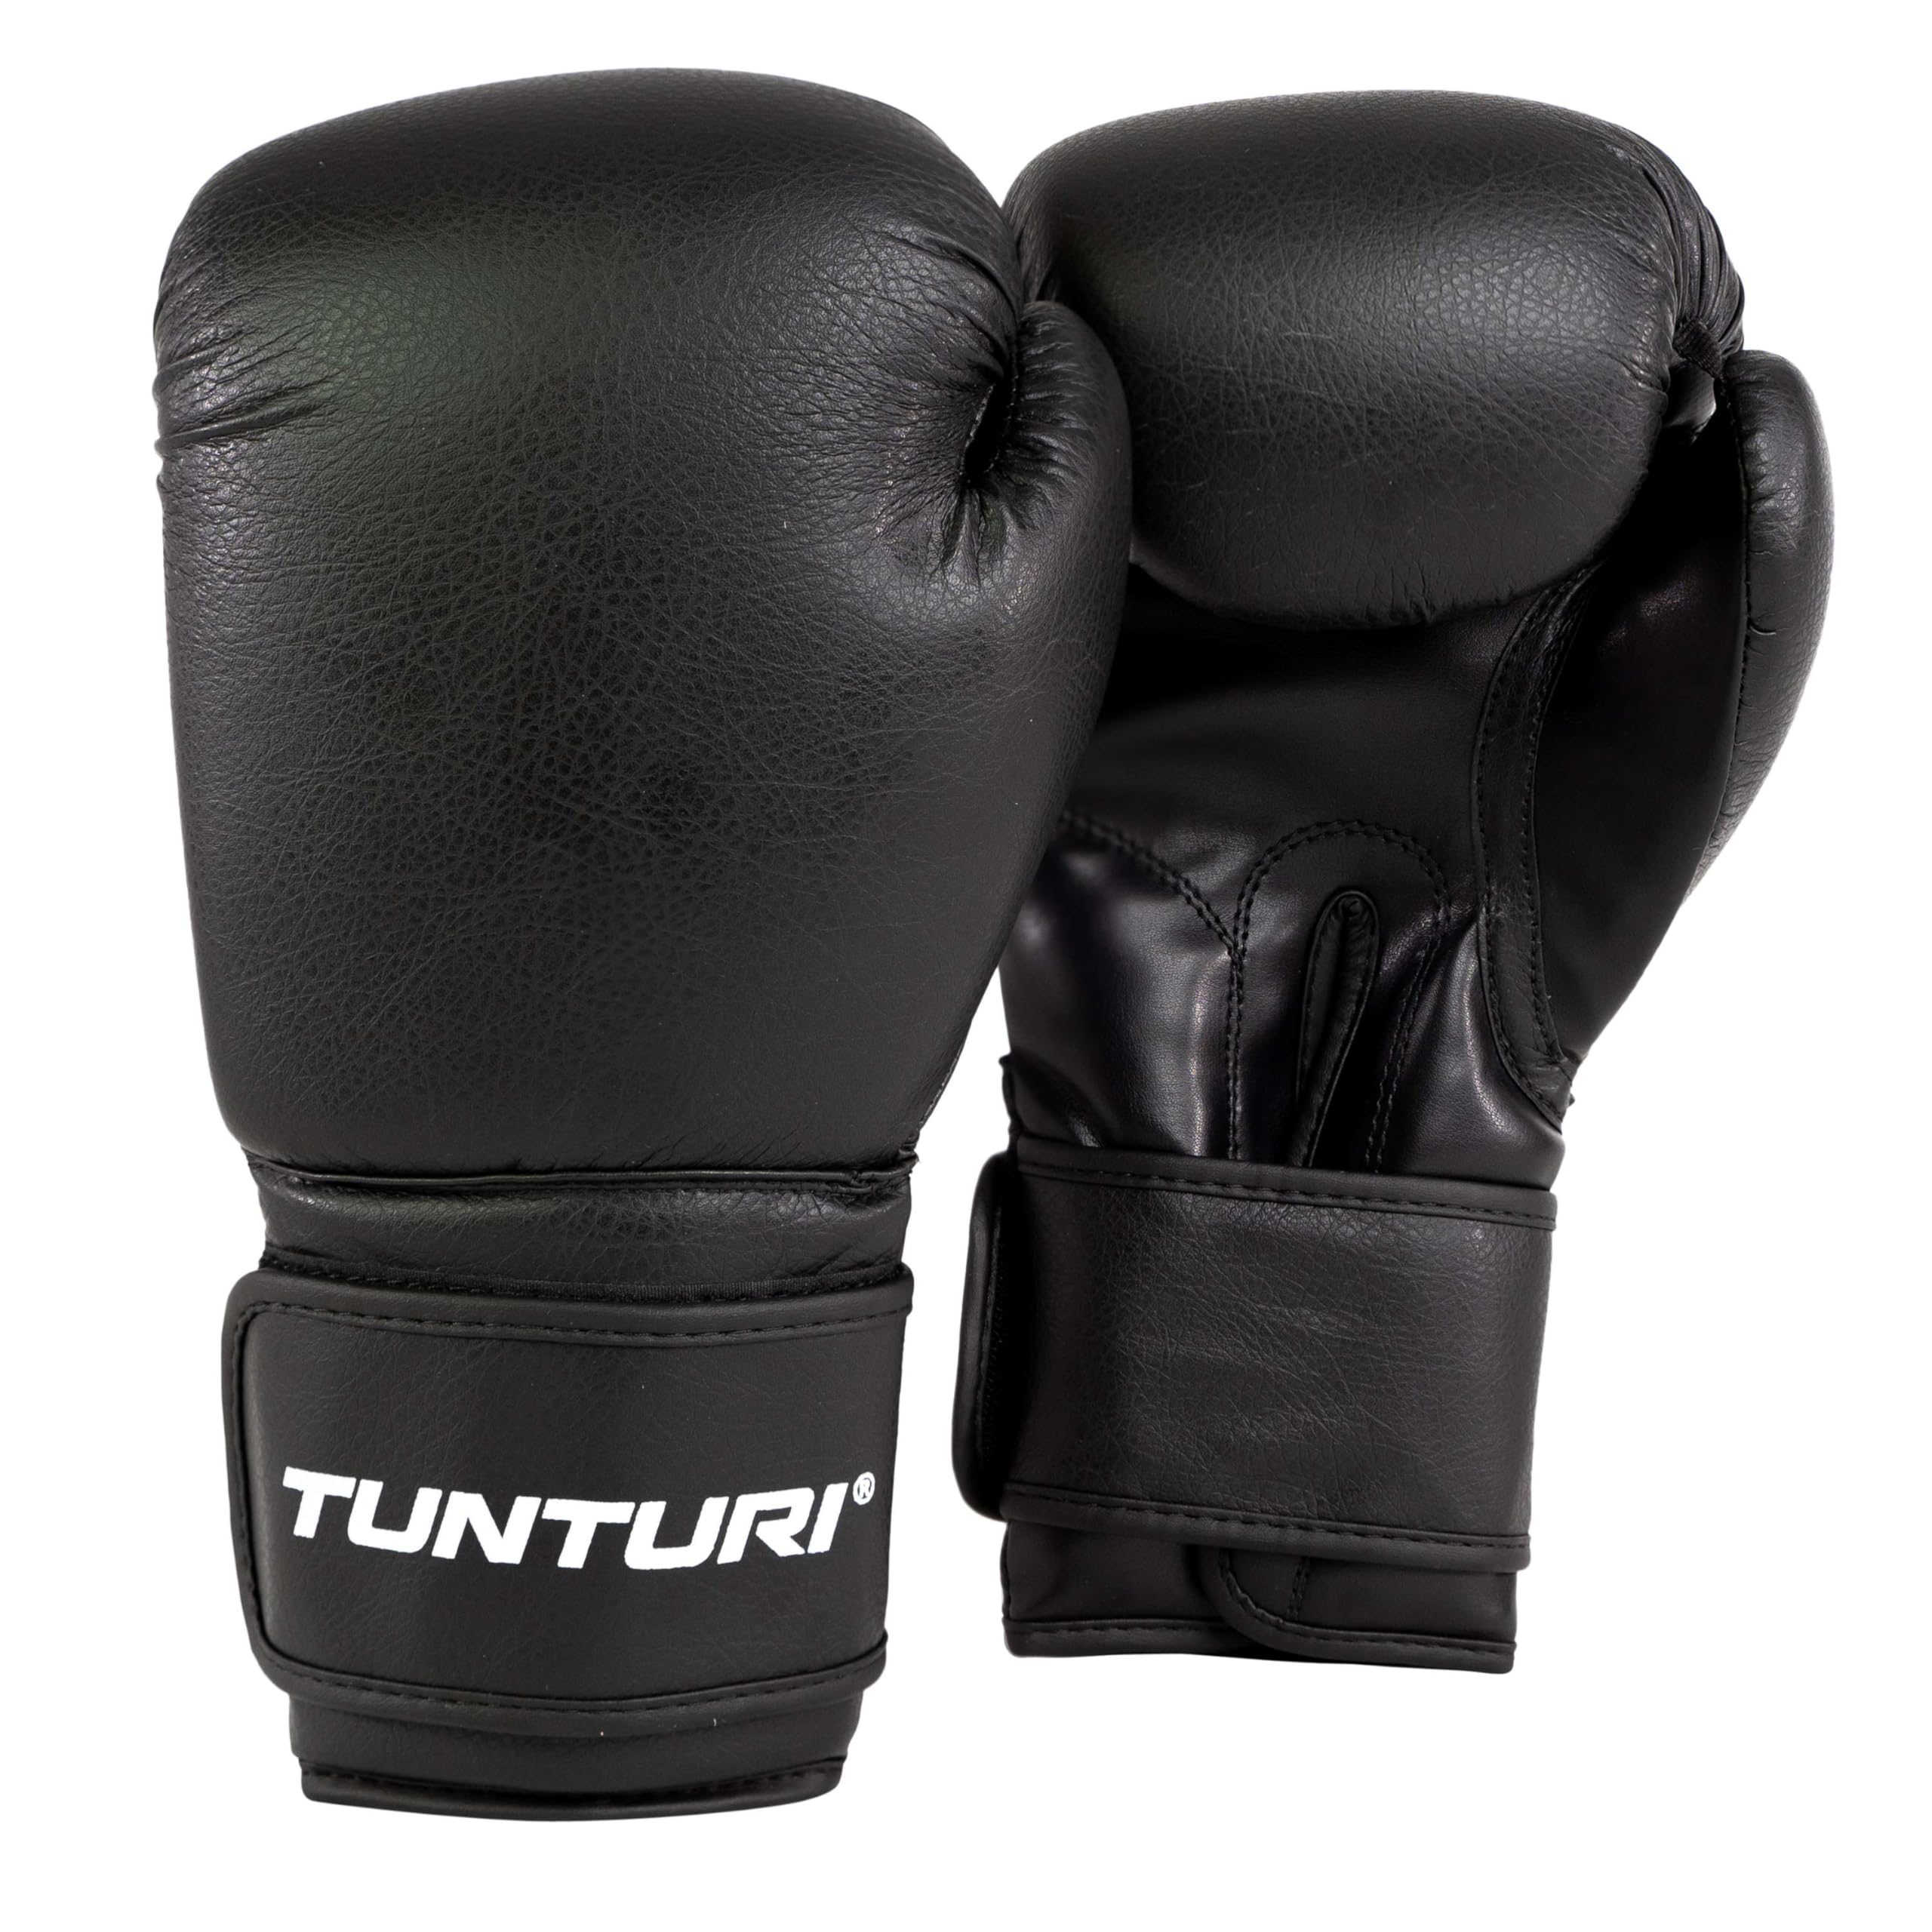 Tunturi Allround Boxhandschuhe 10oz - Geeignet für Boxsack Training - Boxing Gloves für Verschiedene Kampfsportarten, Boxen, Kickboxen, Muay Thai - Sparring - Extra steifes PU-Material, Schwarz,Weiß